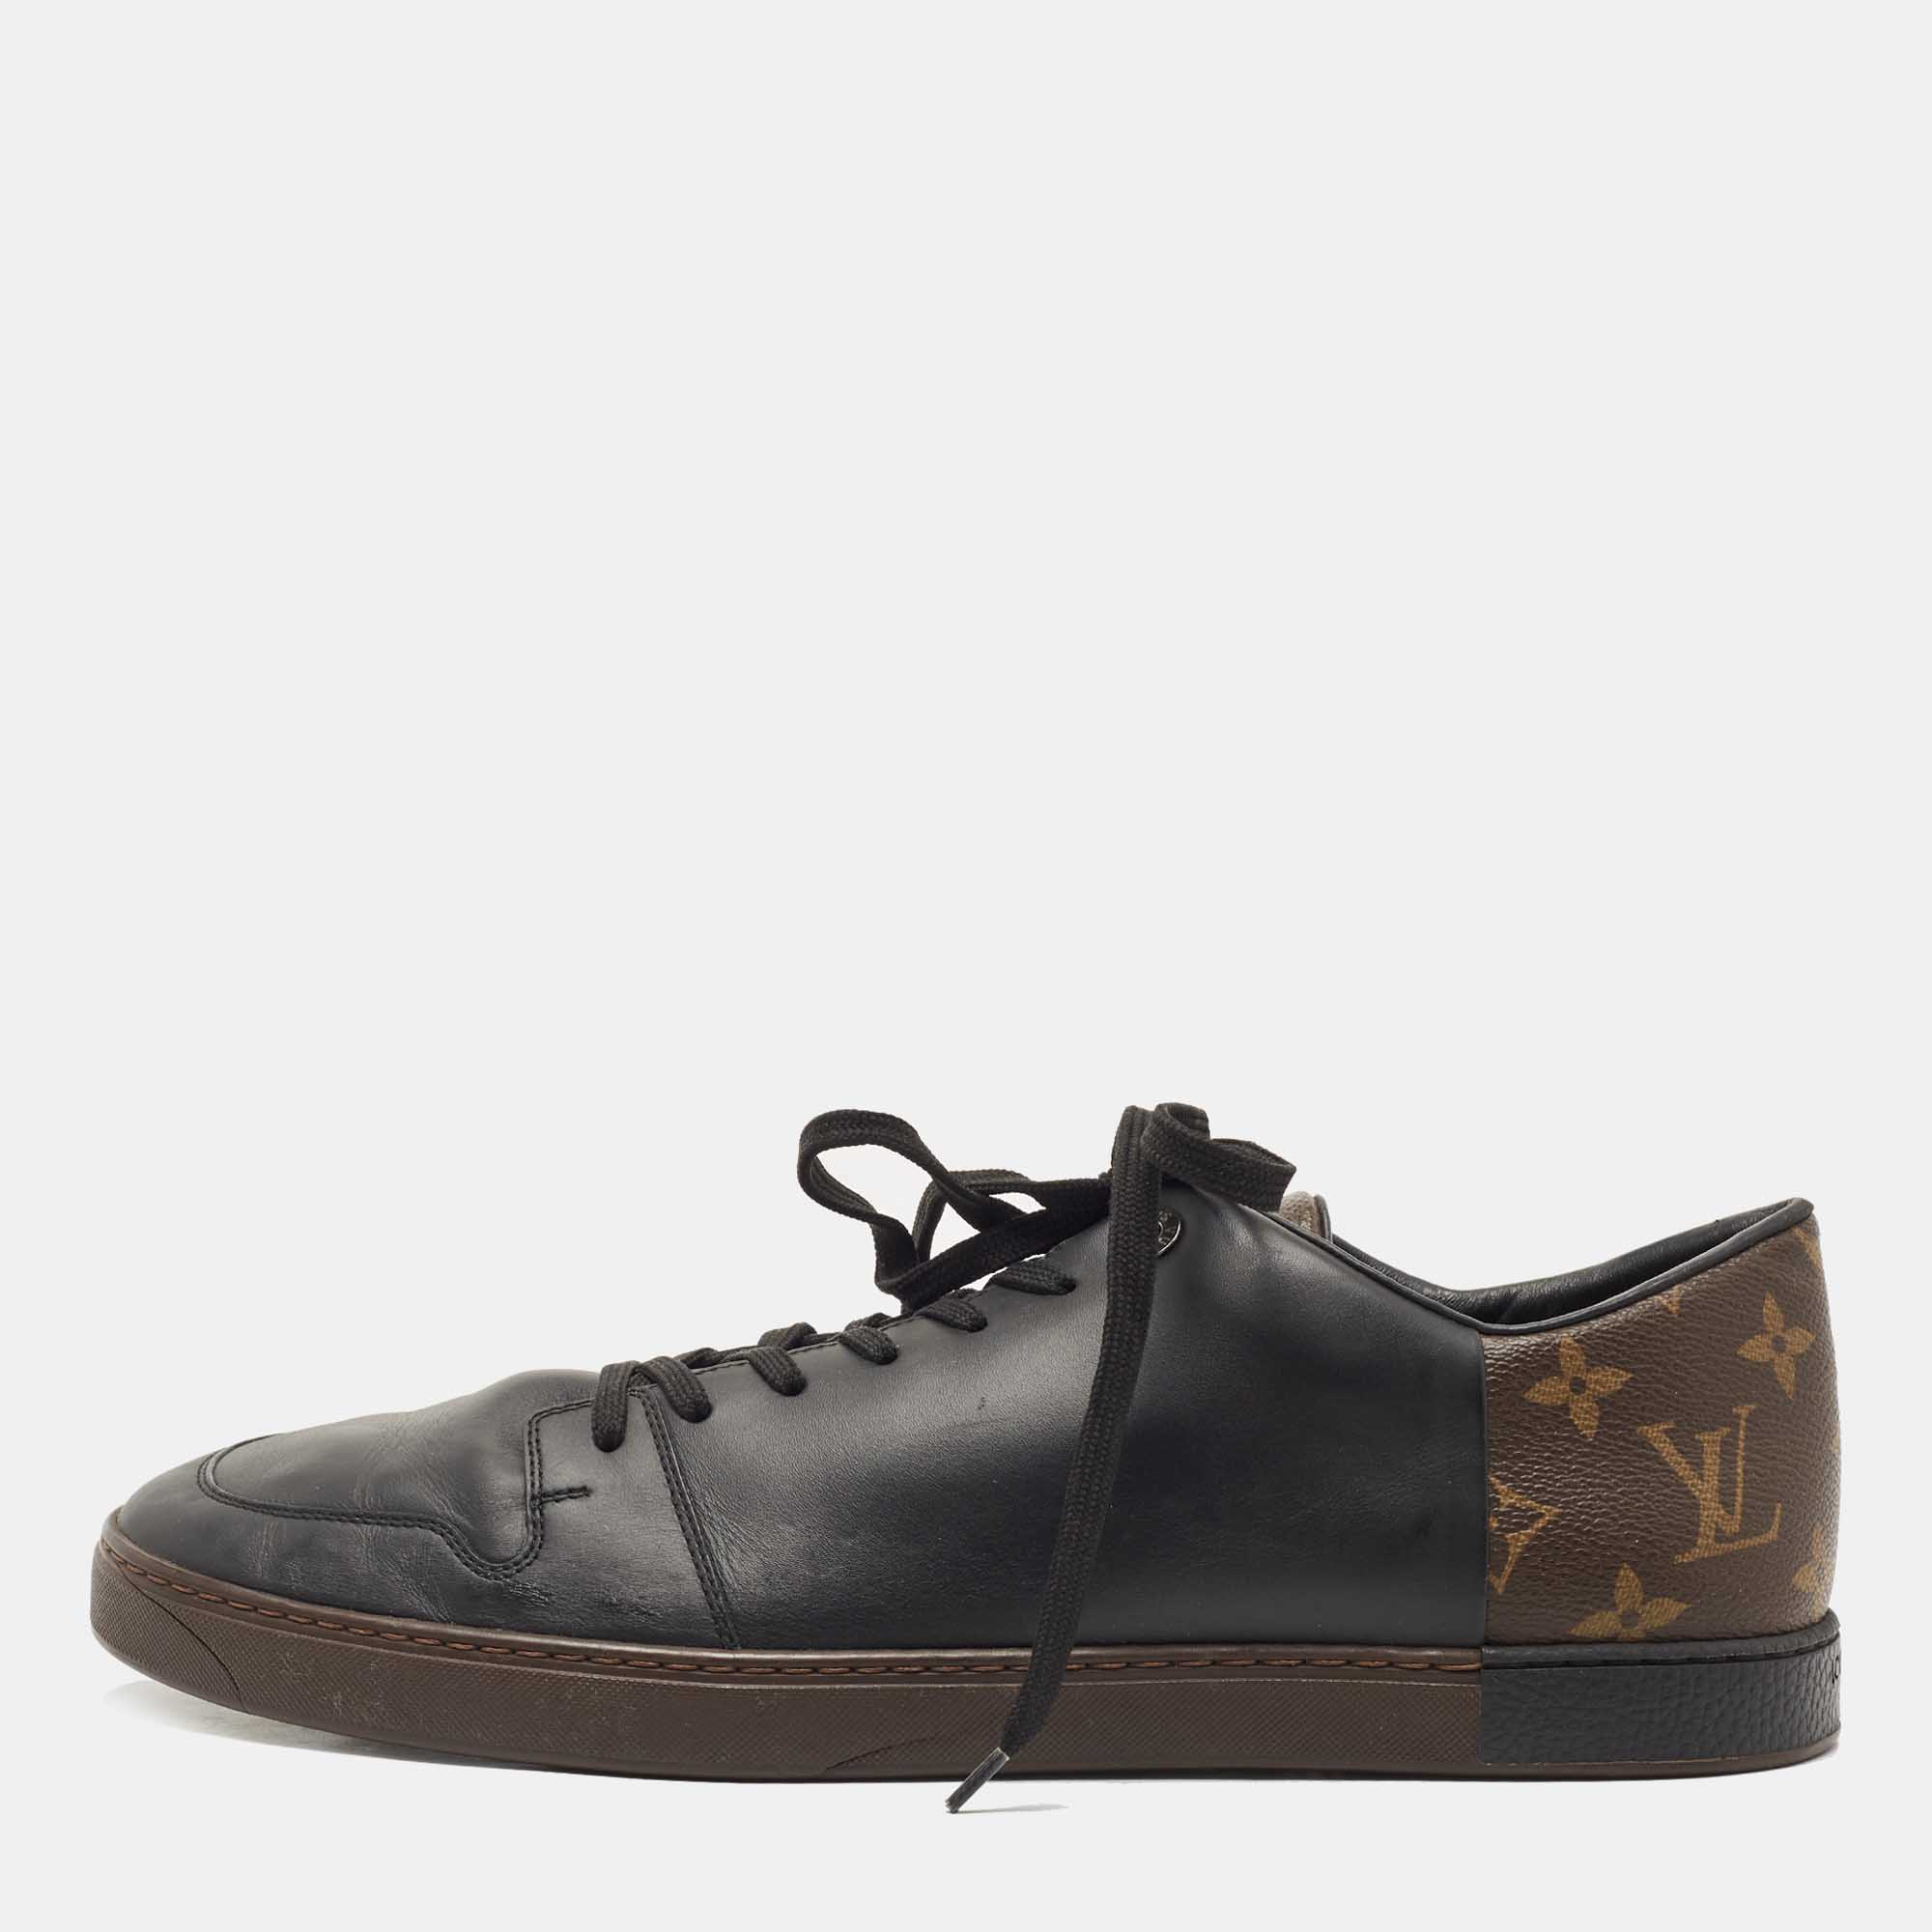 Louis Vuitton, Shoes, Louis Vuitton Brown Leather Canvas Low Top Men  Sneakers Size